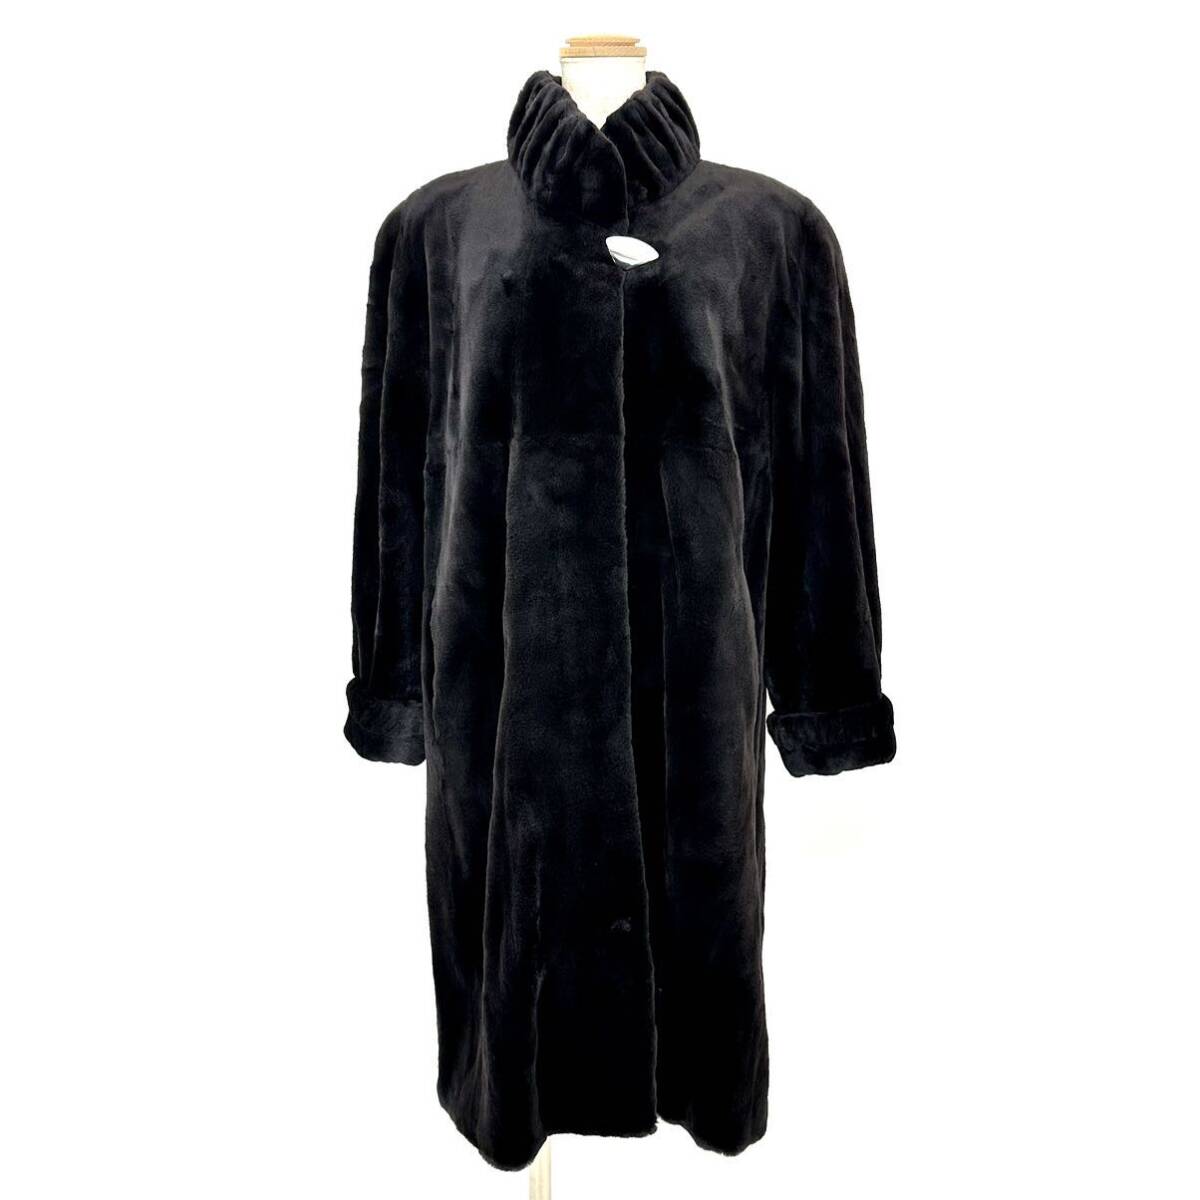 【貂商】h2820 SAGA MINK シェアードミンク ハーフコート デザインコート セミロング ロングコート ミンクコート 貂皮 mink身丈 約100cmの画像5